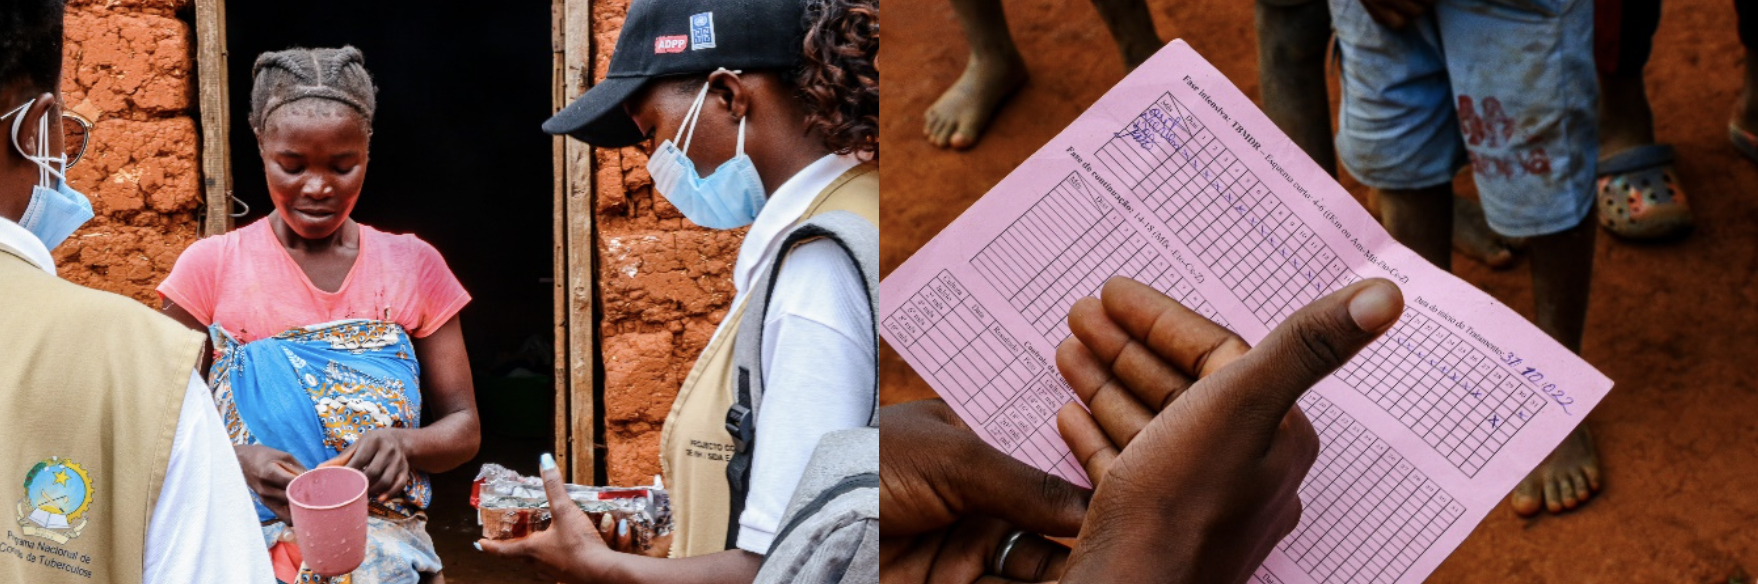 Agentes de saúde comunitários entregam medicamentos para tuberculose e realizam visitas domiciliares para apoiar os pacientes durante o tratamento. Fotos: PNUD Angola